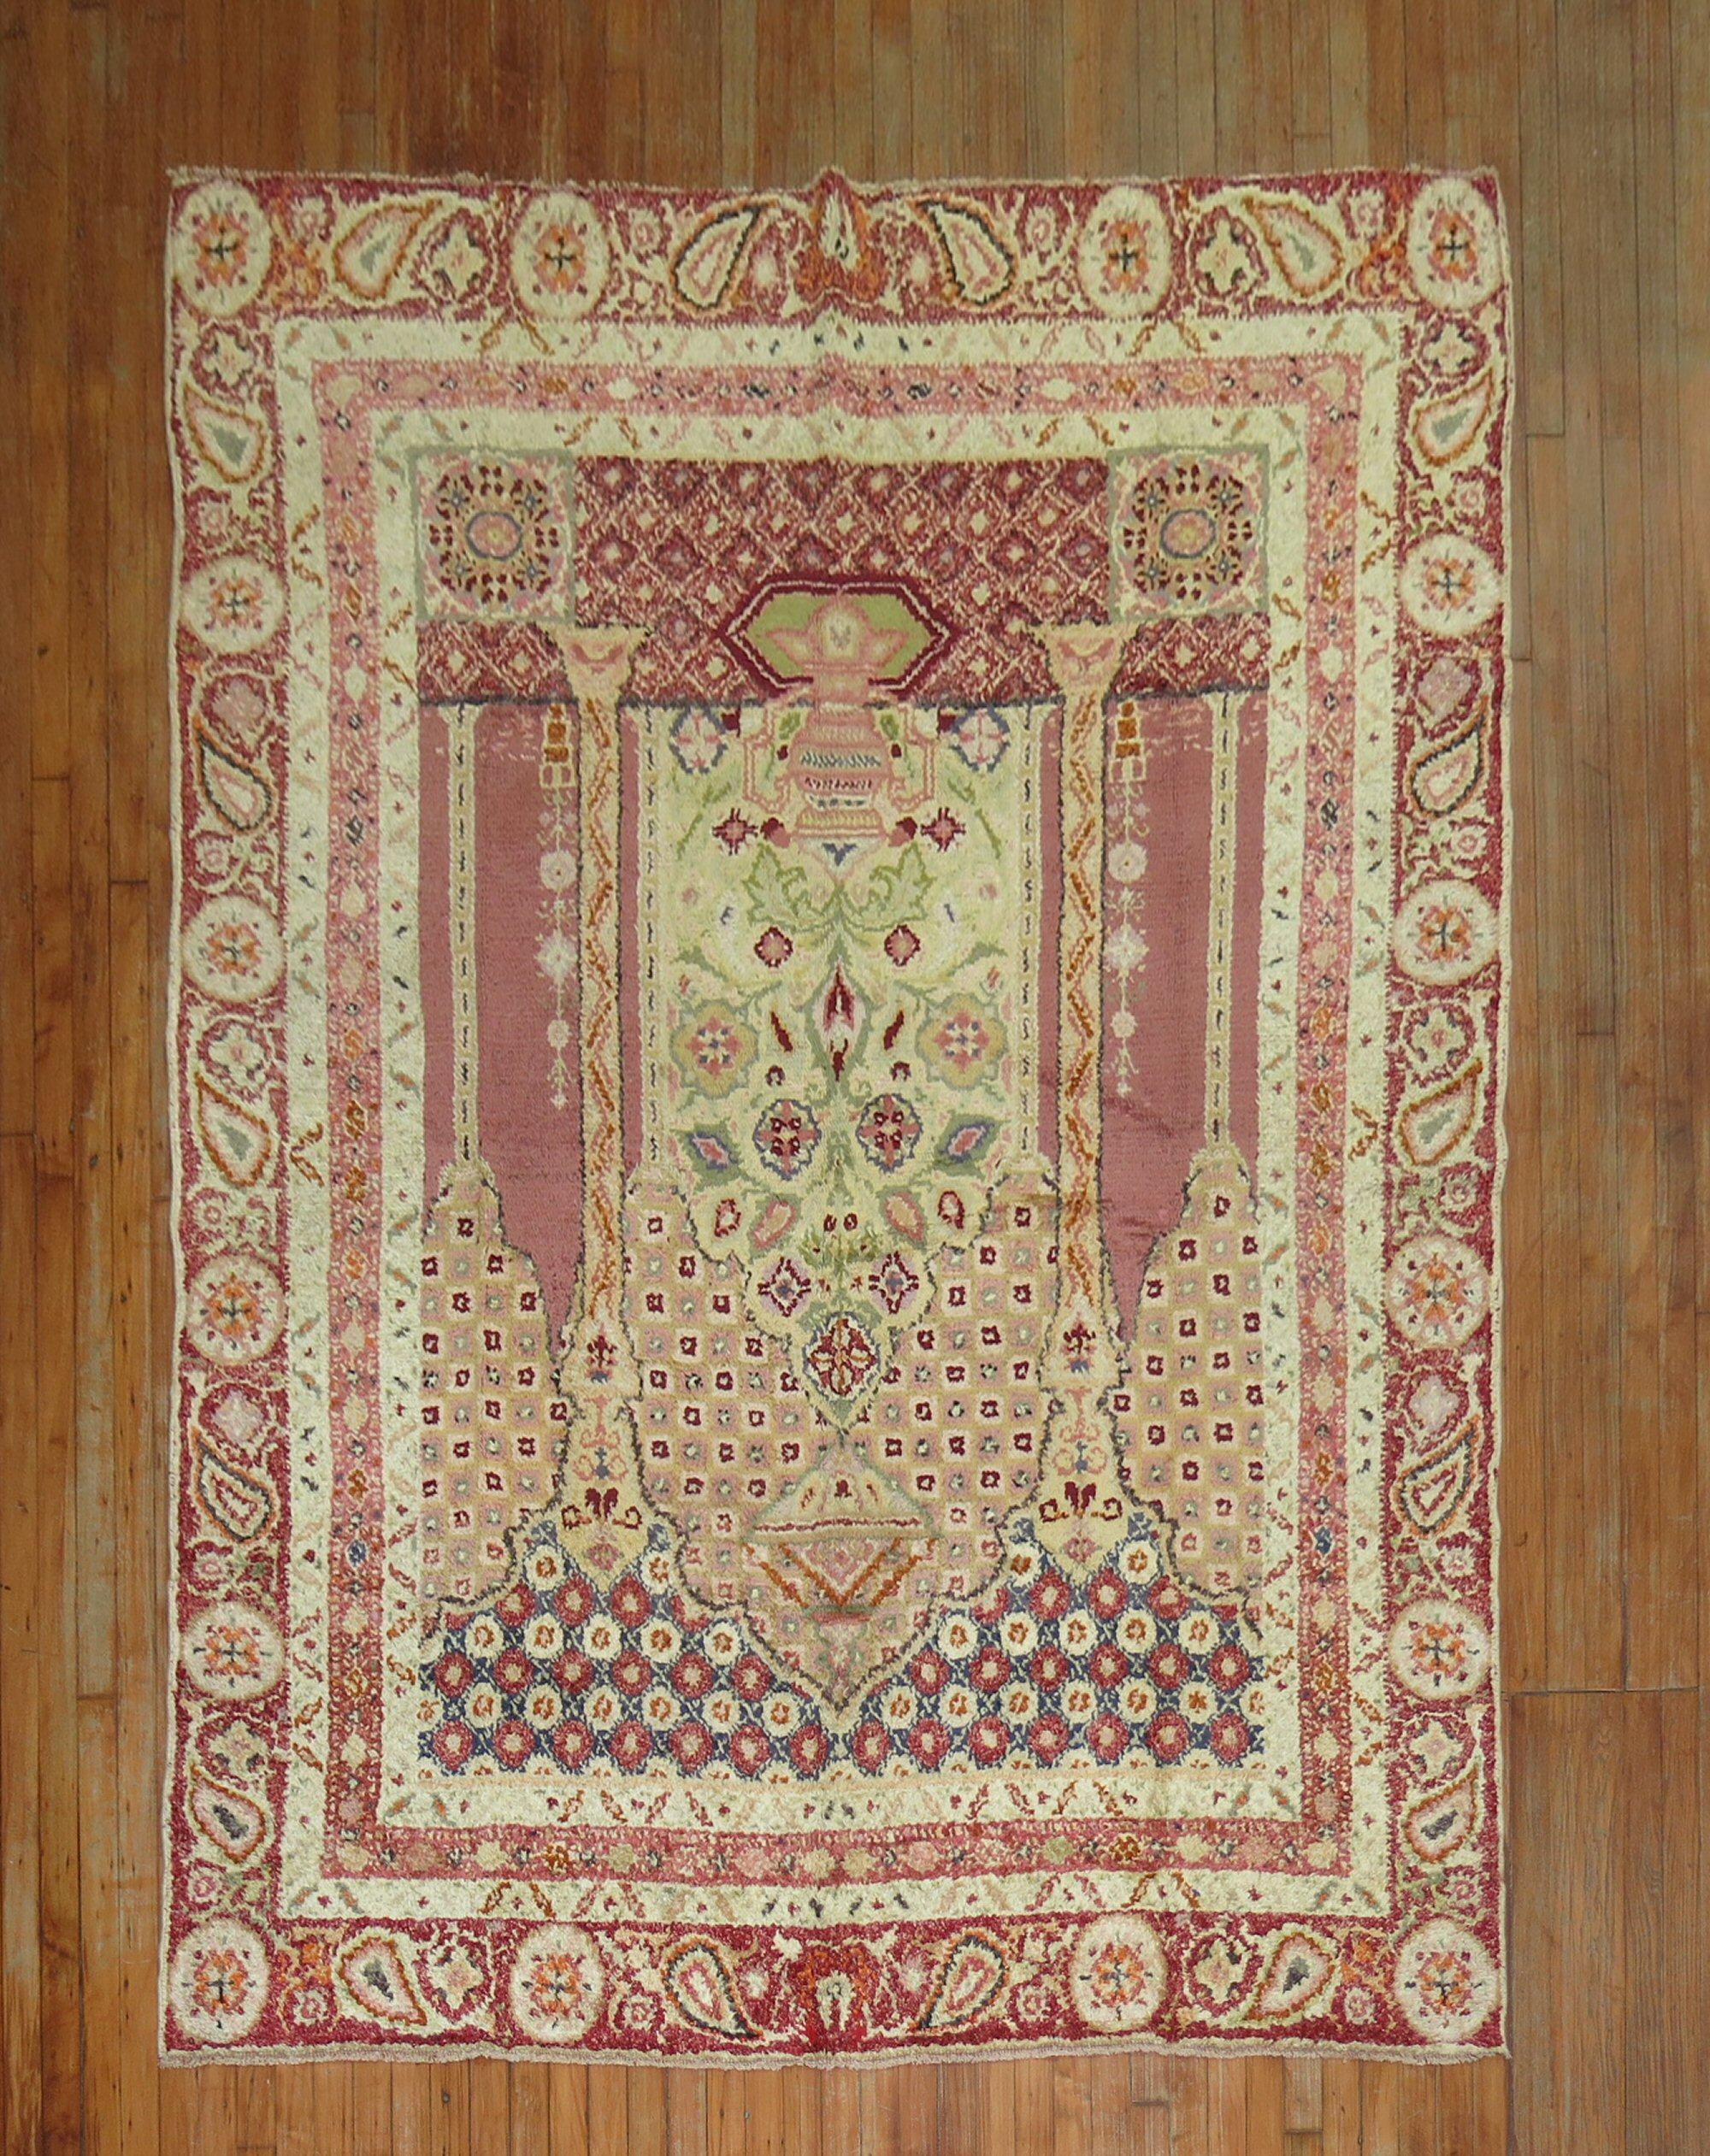 ein türkischer Ghiordes-Teppich mittlerer Größe aus dem frühen 20. Jahrhundert mit einem Gebetsnischen-Muster, das auch in kleineren Formaten als Streu- und Akzentteppich zu finden ist. Ein Statement-Teppich für sich

Maße: 6'6'' x 8'6''.